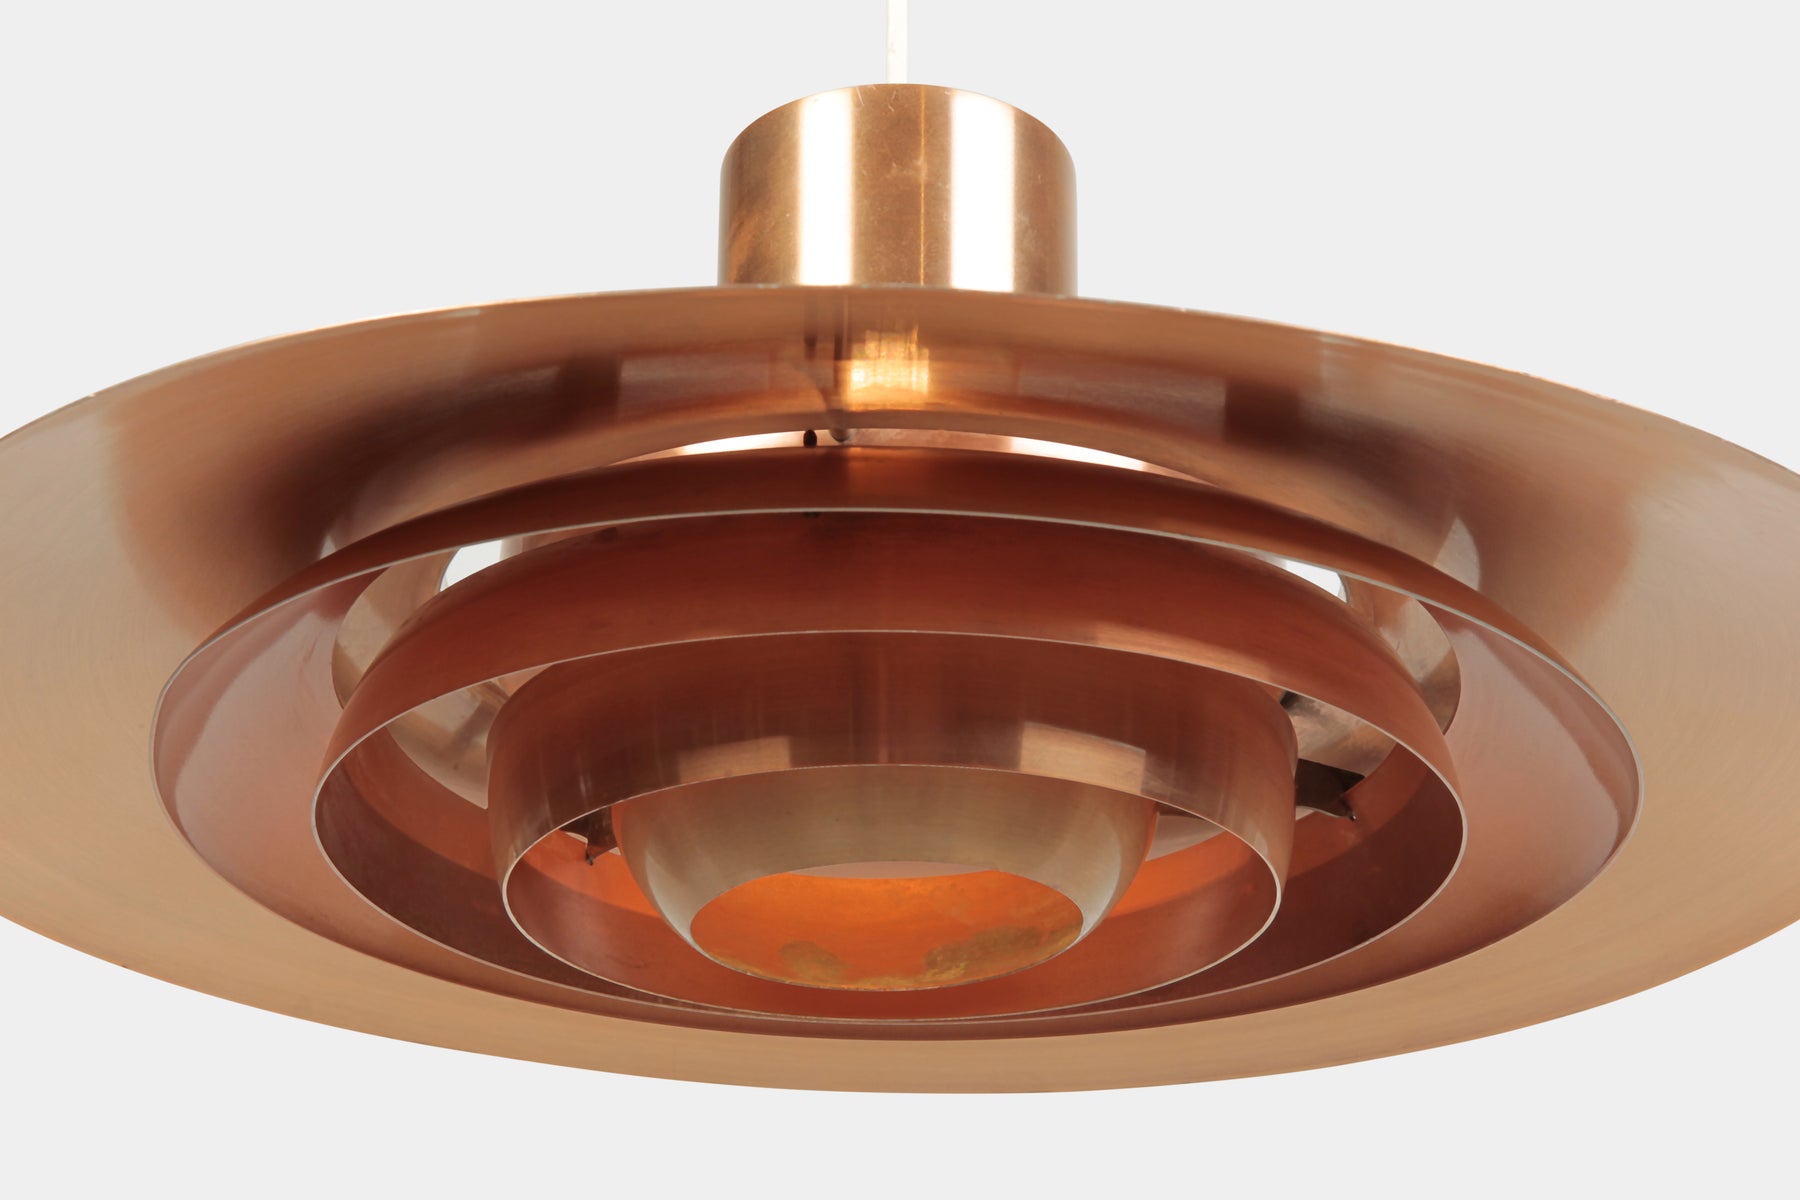 Fabricius & Kastholm Ceiling Lamp, Copper, P 376